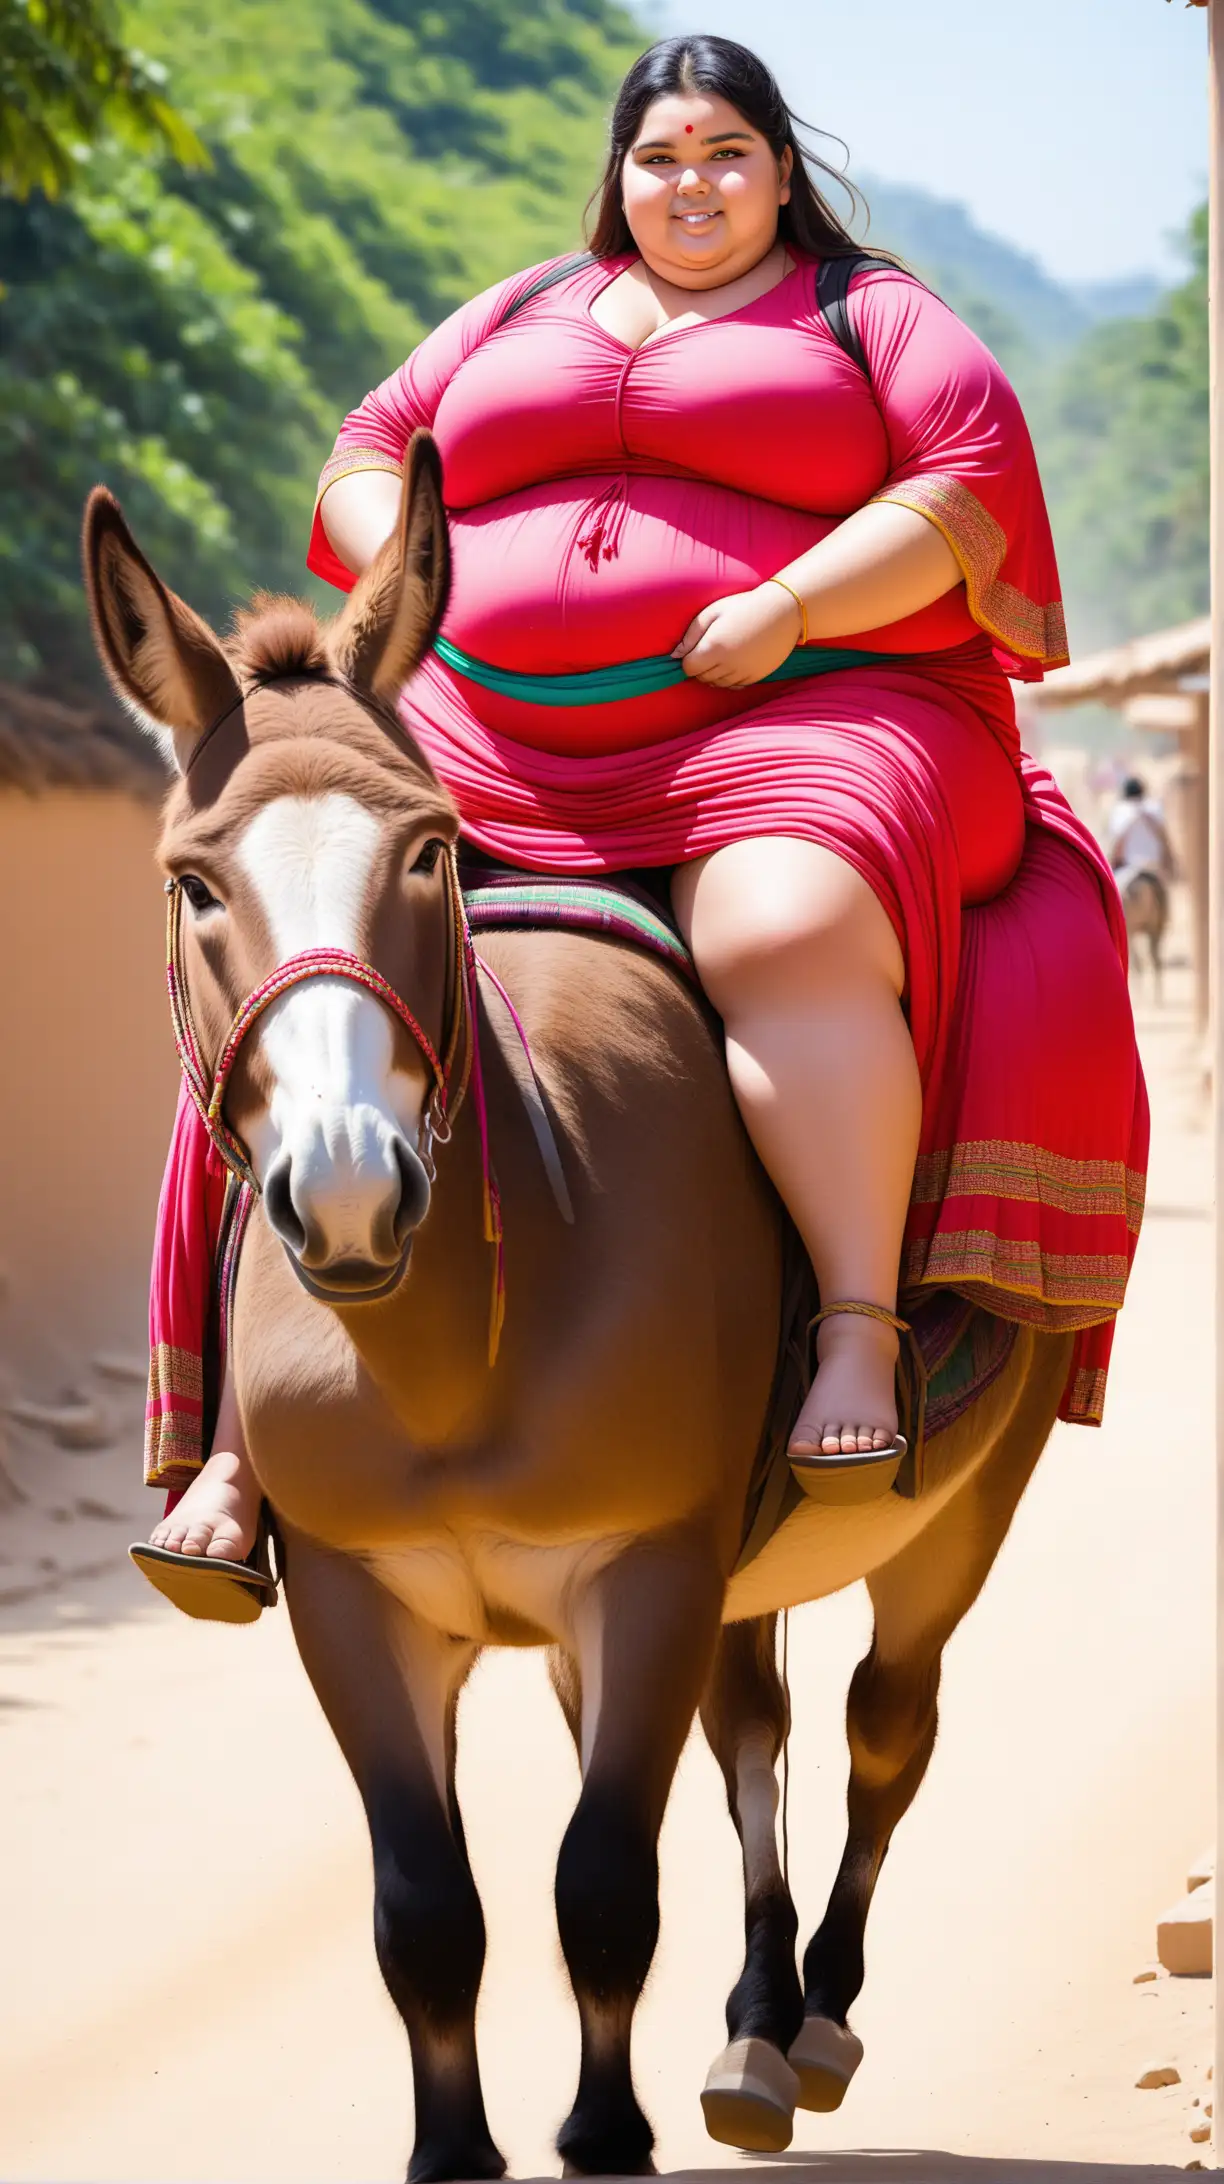 Curvy Woman Enjoying a Donkey Ride